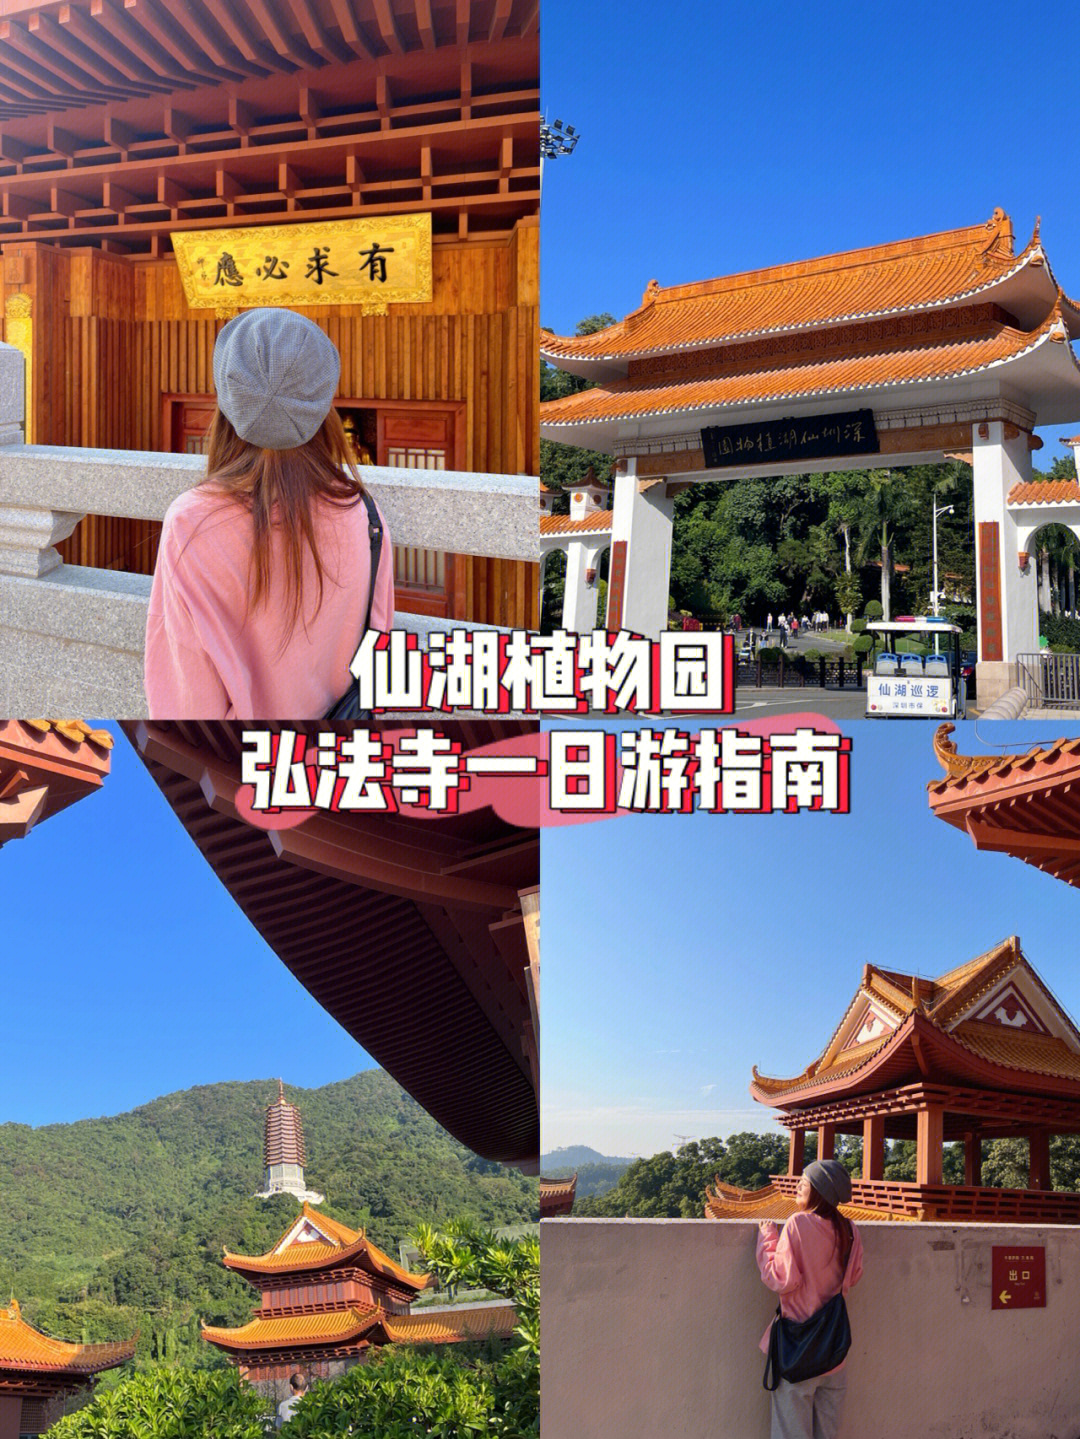 深圳仙湖植物园预约图片